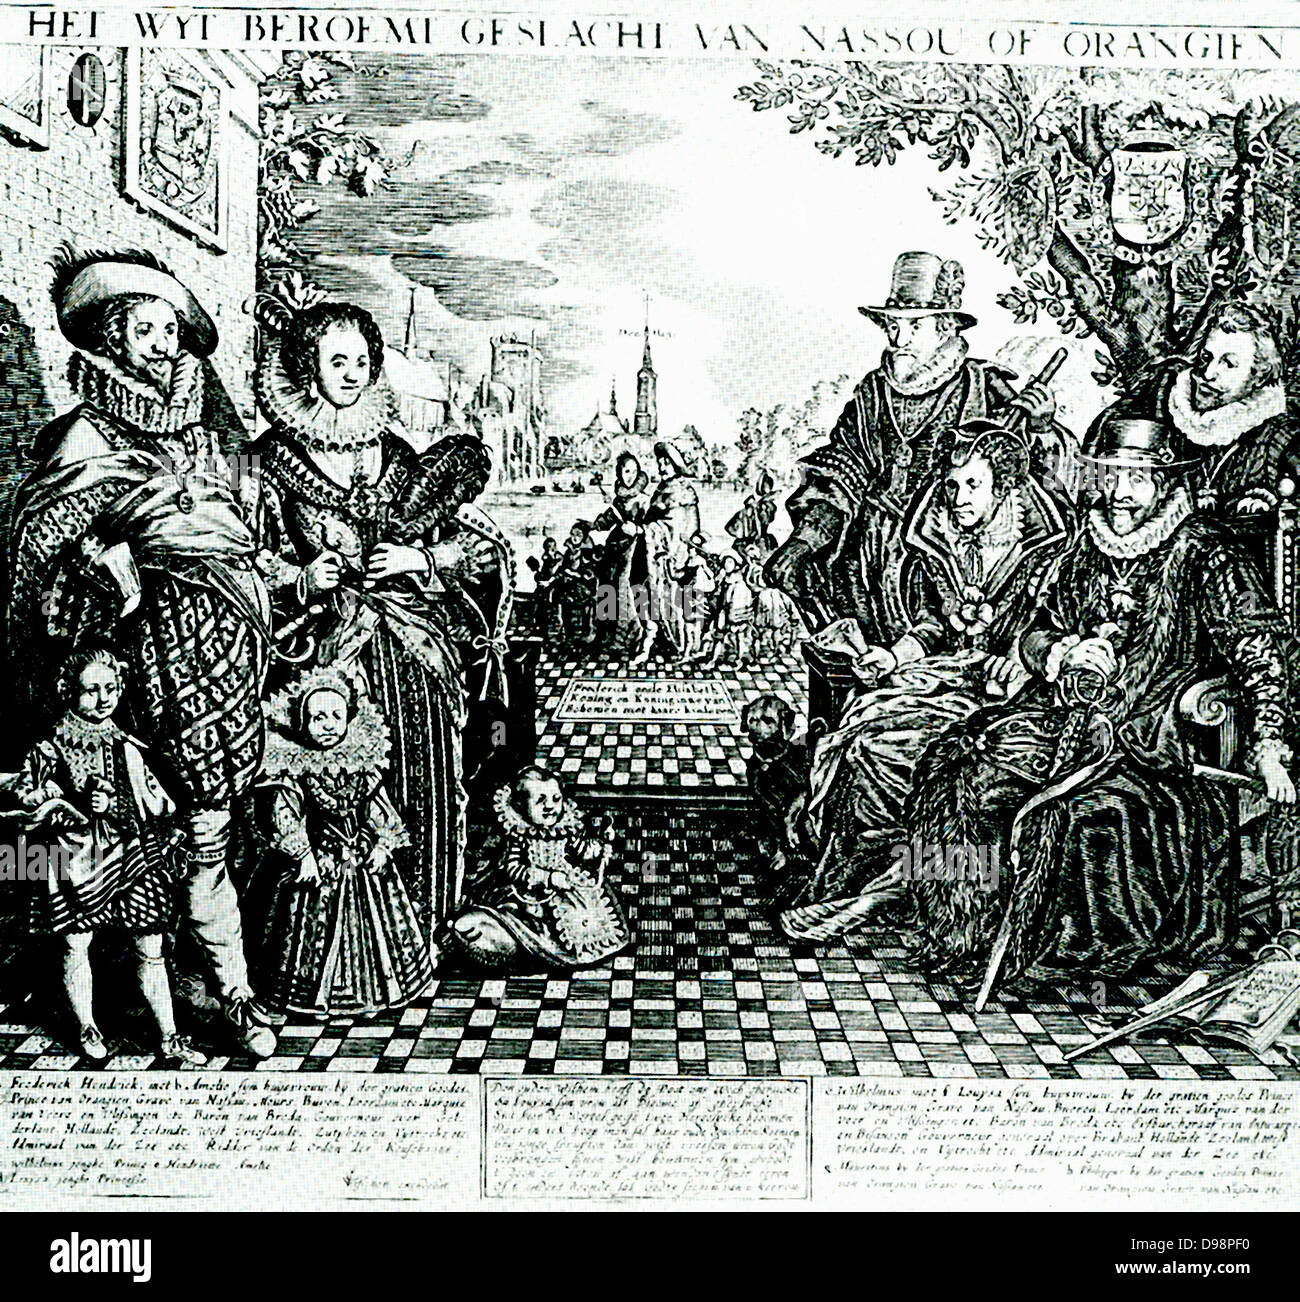 Guglielmo I, principe di Orange (24 Aprile 1533 - 10 luglio 1584), anche conosciuto come William la silenziosa (Olandese: Willem de Zwijger), o semplicemente Guglielmo d Orange (Olandese: Willem van Oranje), è stato il principale leader della rivolta olandese contro gli Spagnoli che impostato su off gli ottanta anni di guerra e ha comportato l'indipendenza formale delle province unite nel 1648. Incisione di Jan Visscher 1628 Foto Stock